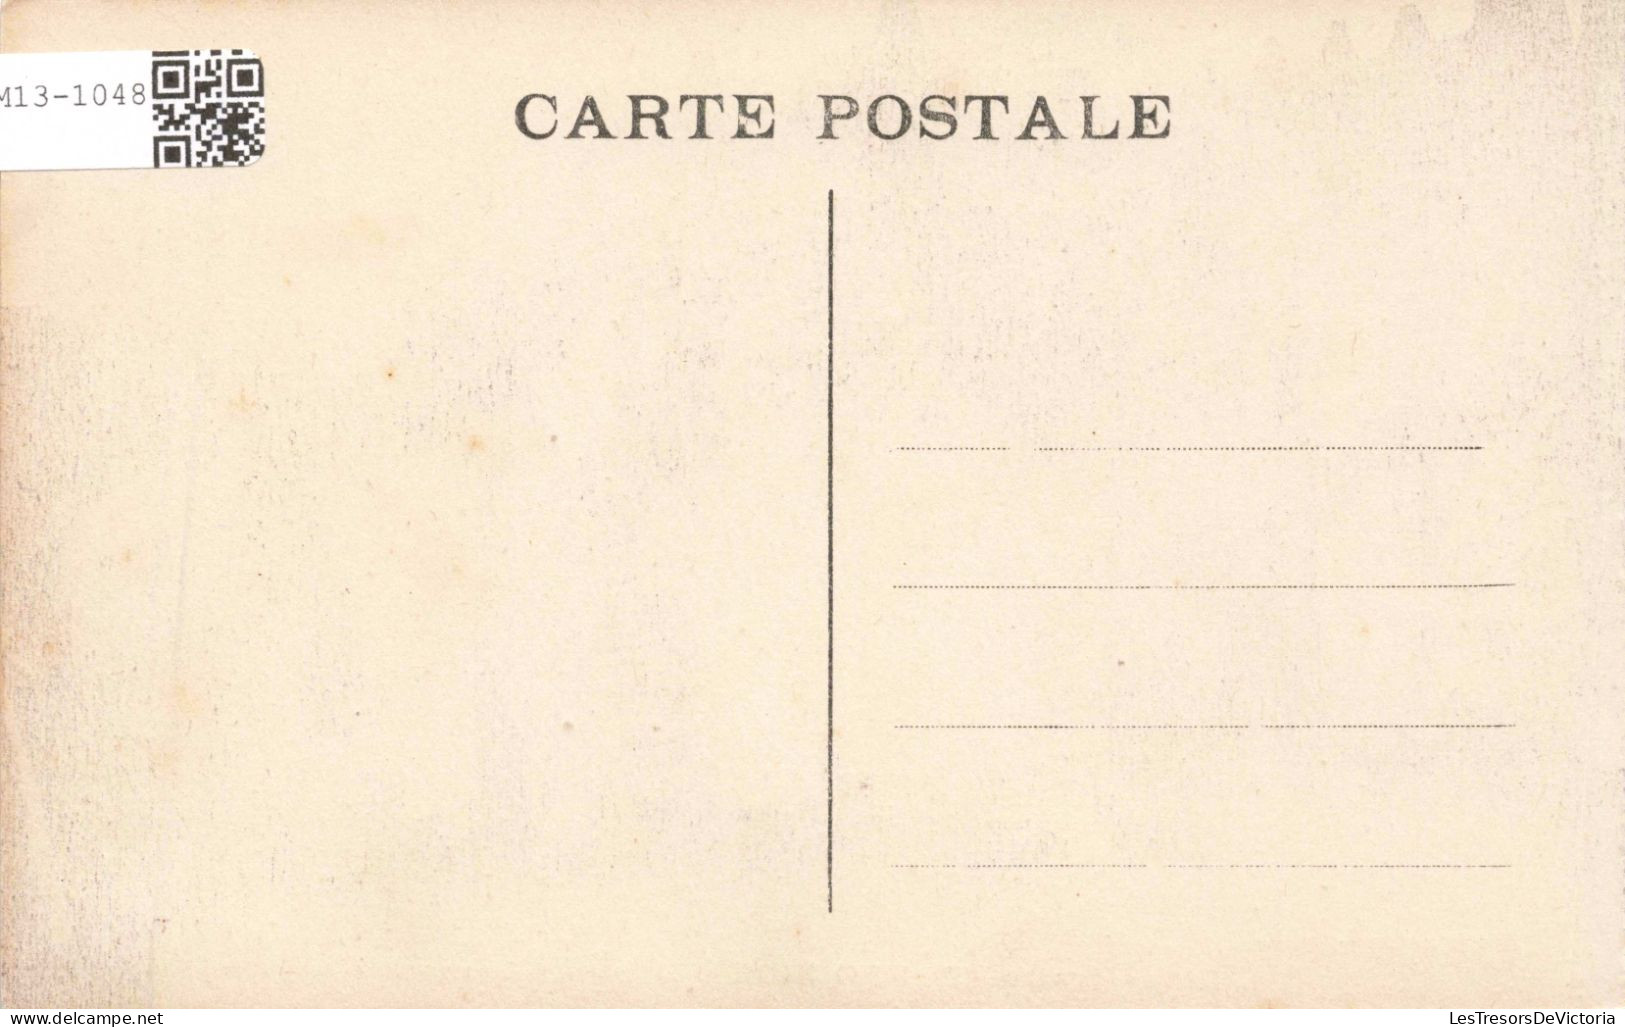 CÔTE D'IVOIRE - Bondoukou - Dans Le Kourouby - Animé - Carte Postale Ancienne - Ivory Coast